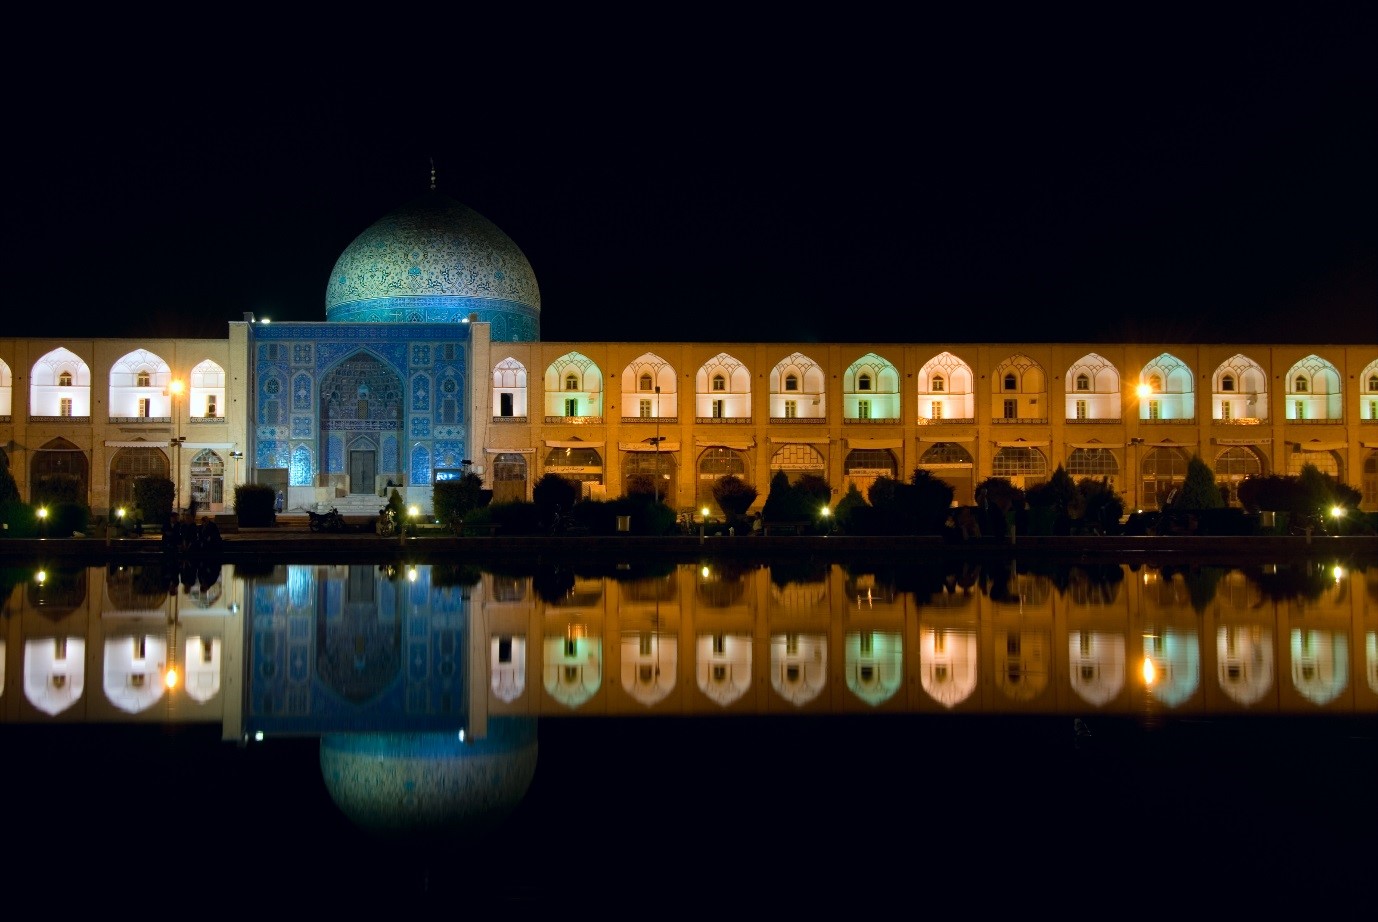 بهترین زمان برای سفر به استان اصفهان